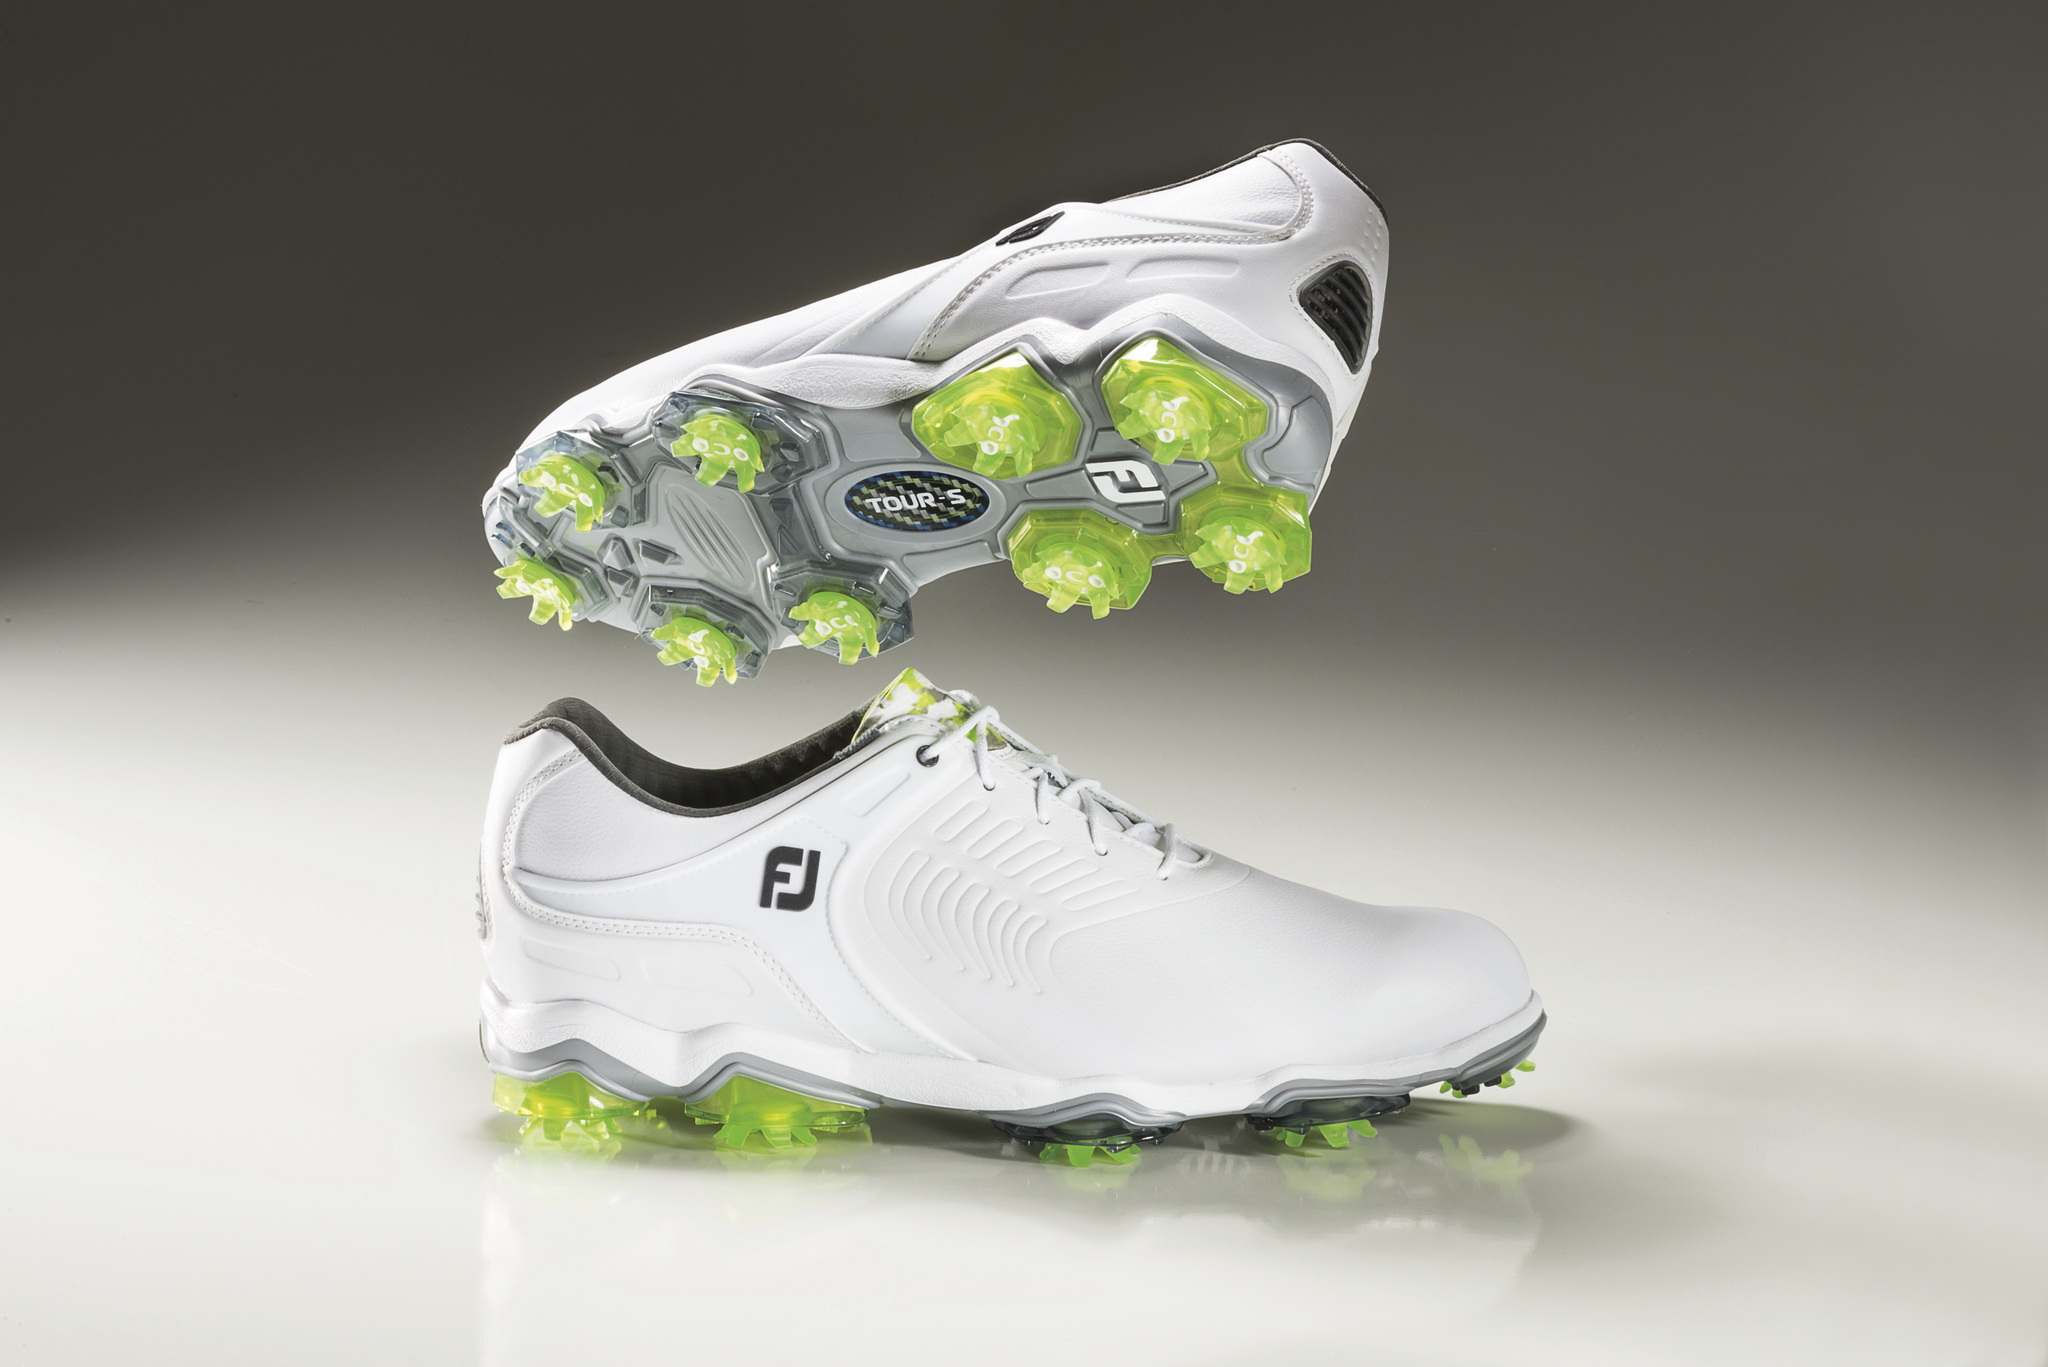 FootJoy launch new Tour-S golf shoe | GolfMagic